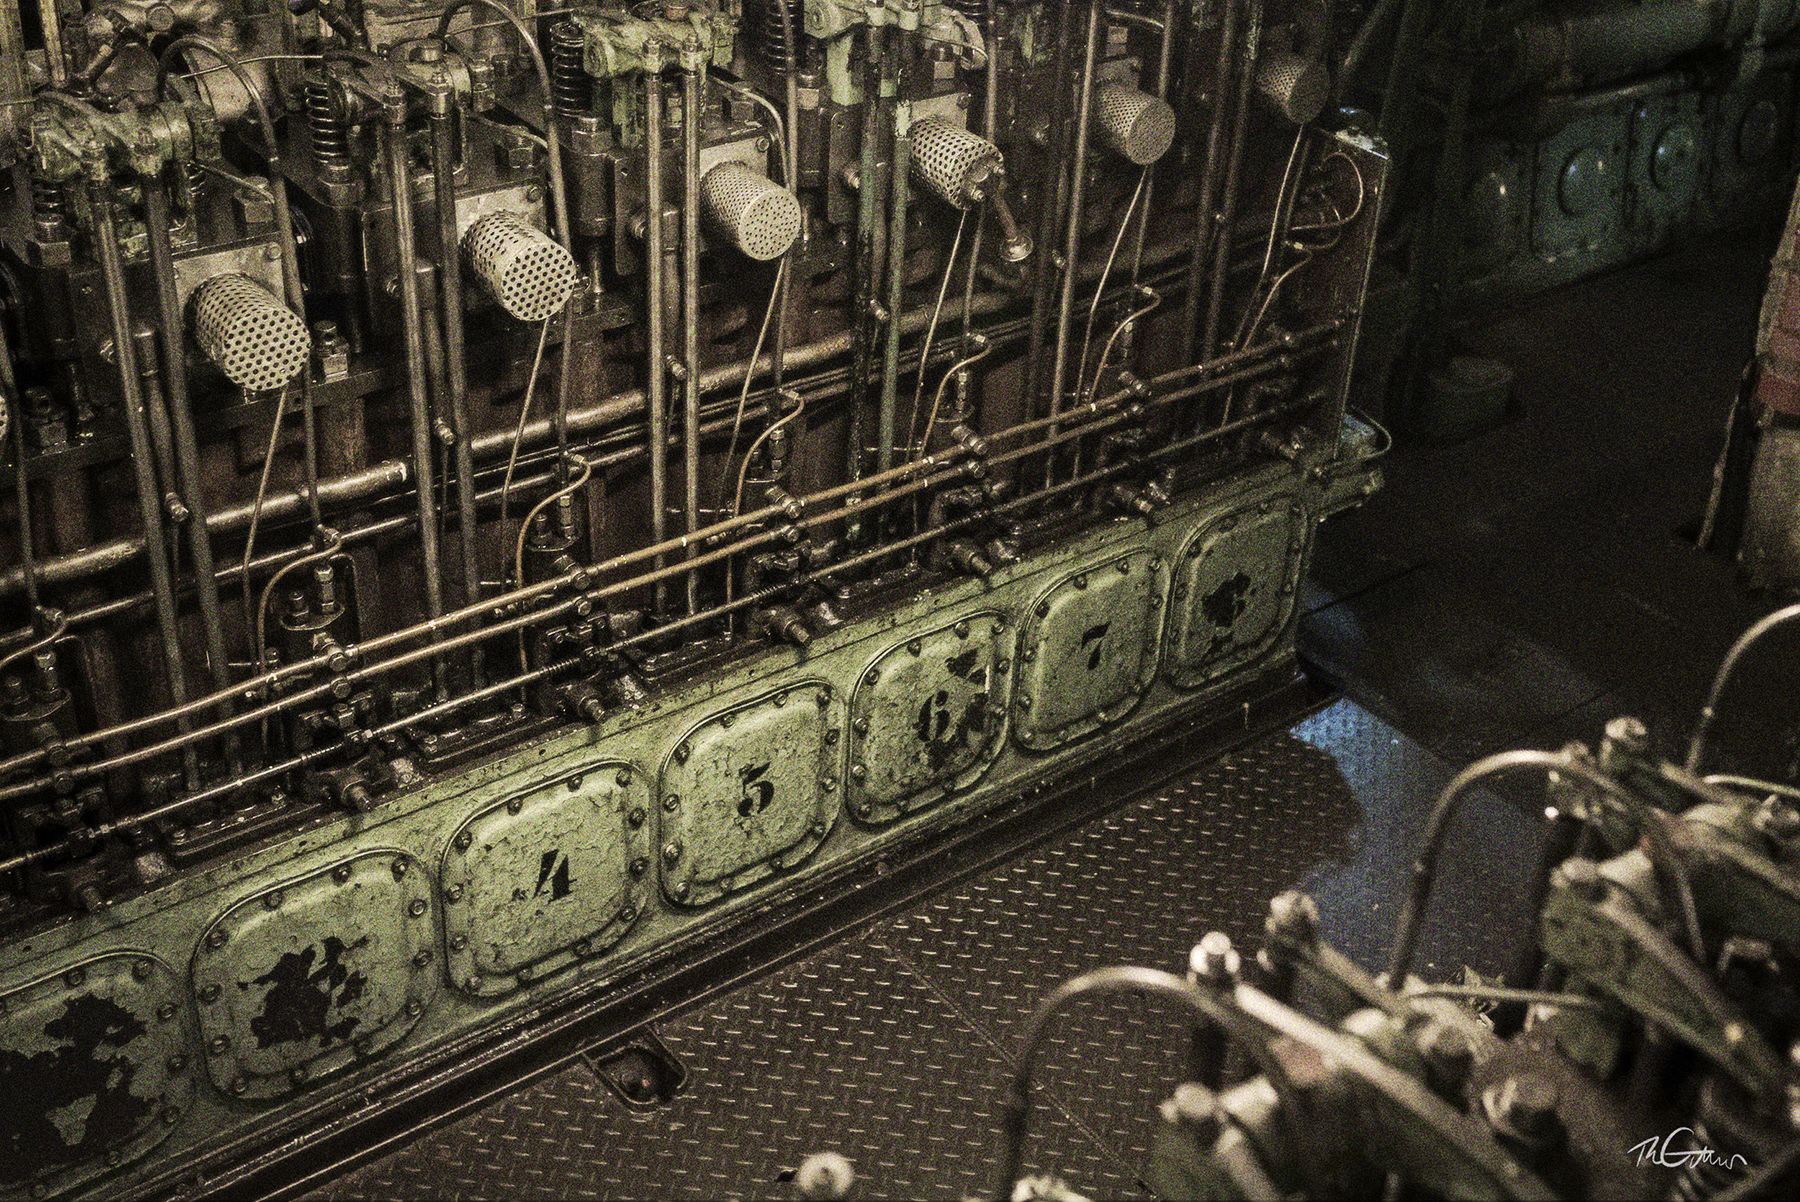 Die Hilfsmaschine im Maschinenraum. Es sind mehrere Zylinderköpfe und davor Bleche mit Nummern sichtbar.